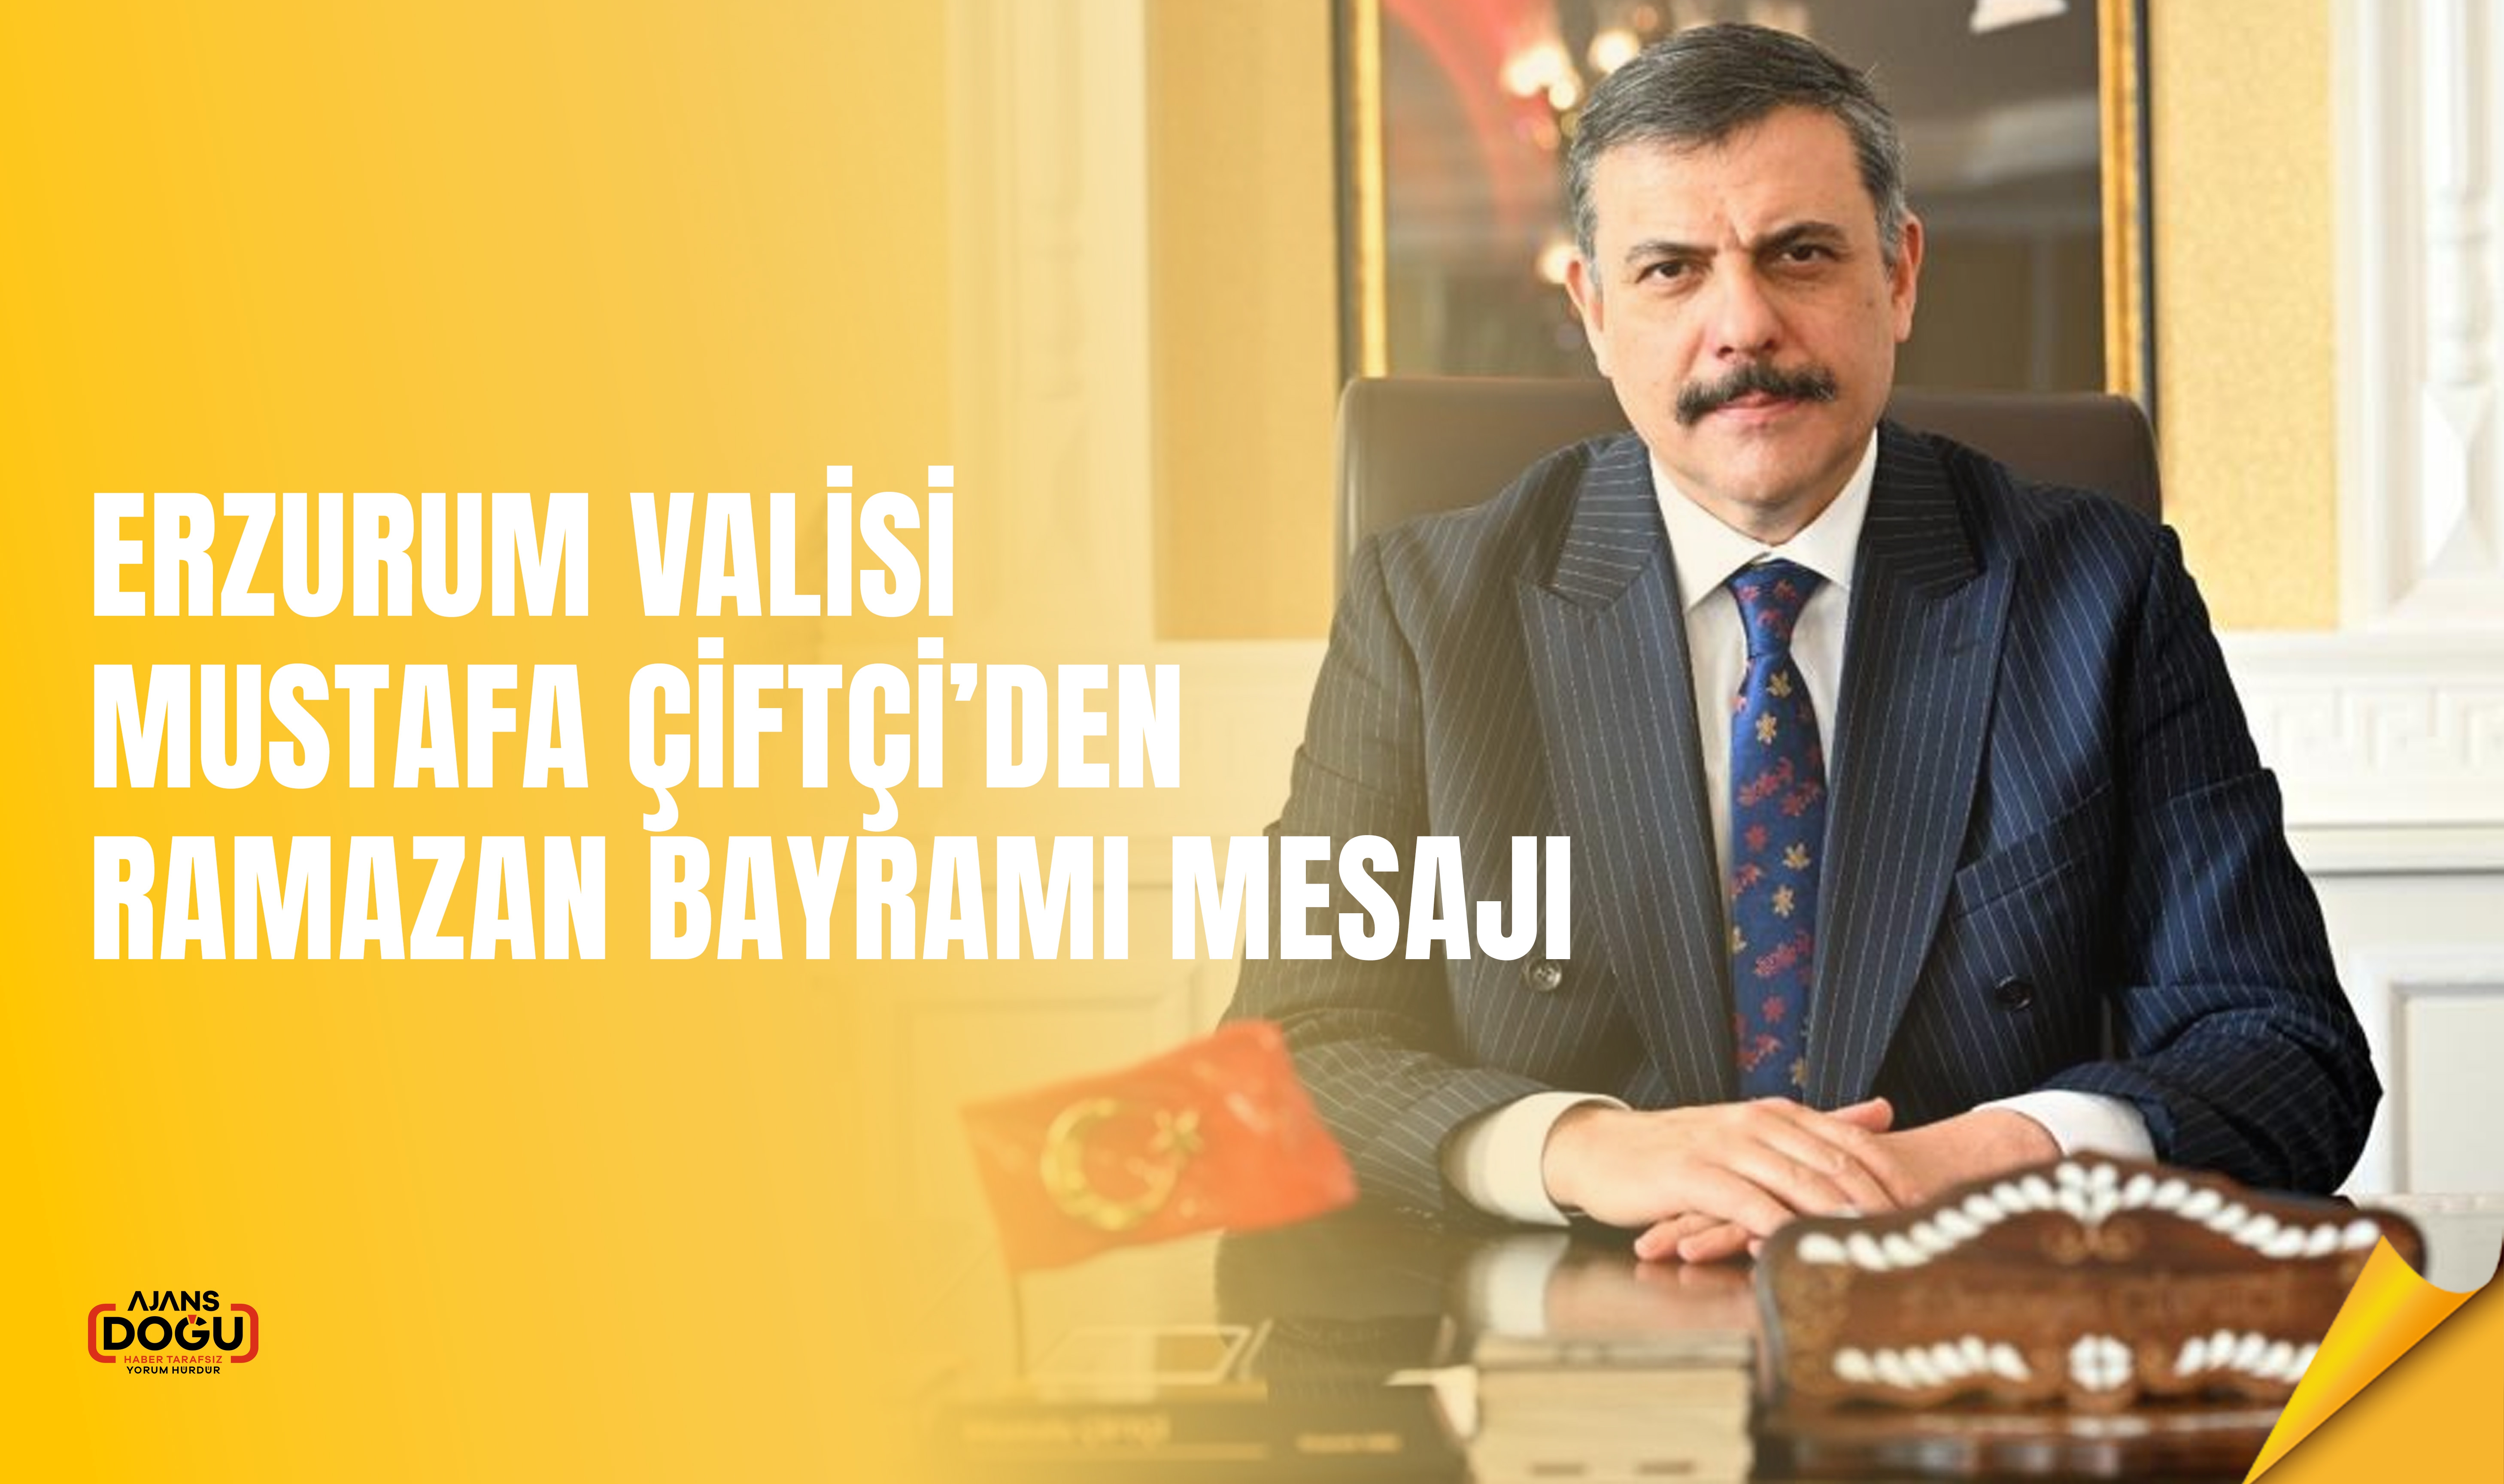 Erzurum Valisi Mustafa Çiftçi’den Ramazan Bayramı mesajı